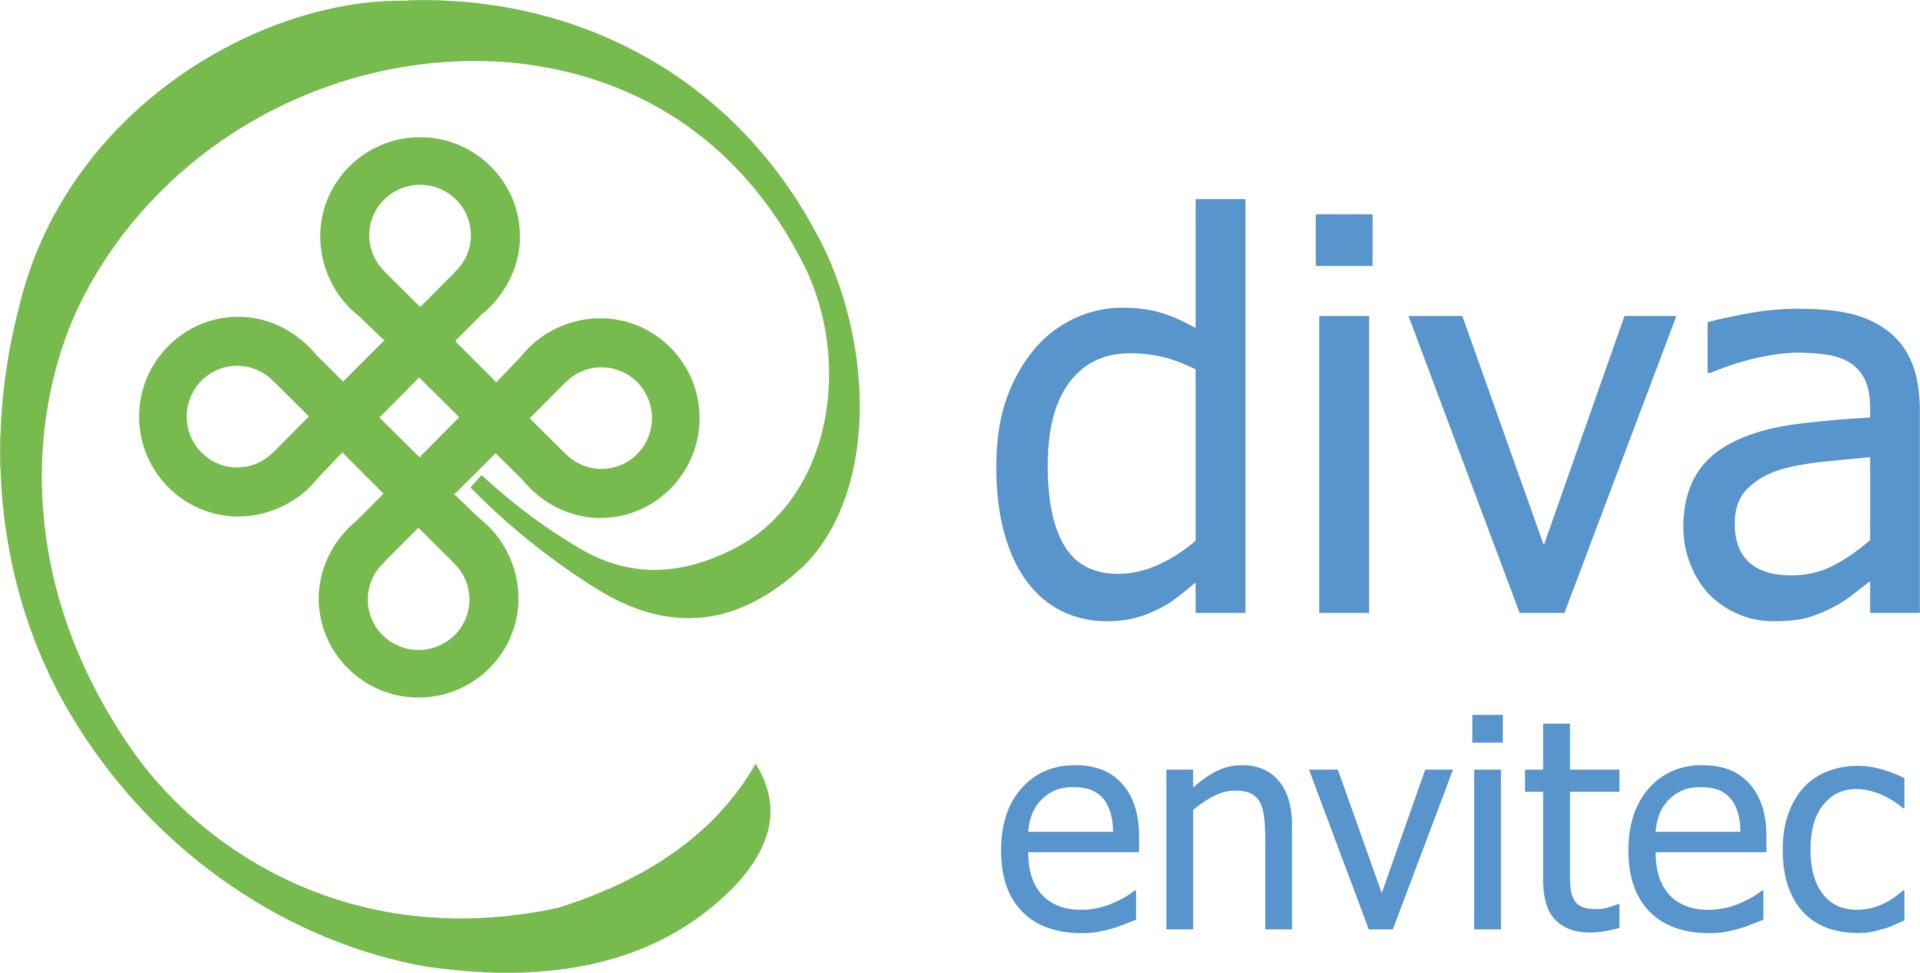 Process Filtration India | Diva Envitec